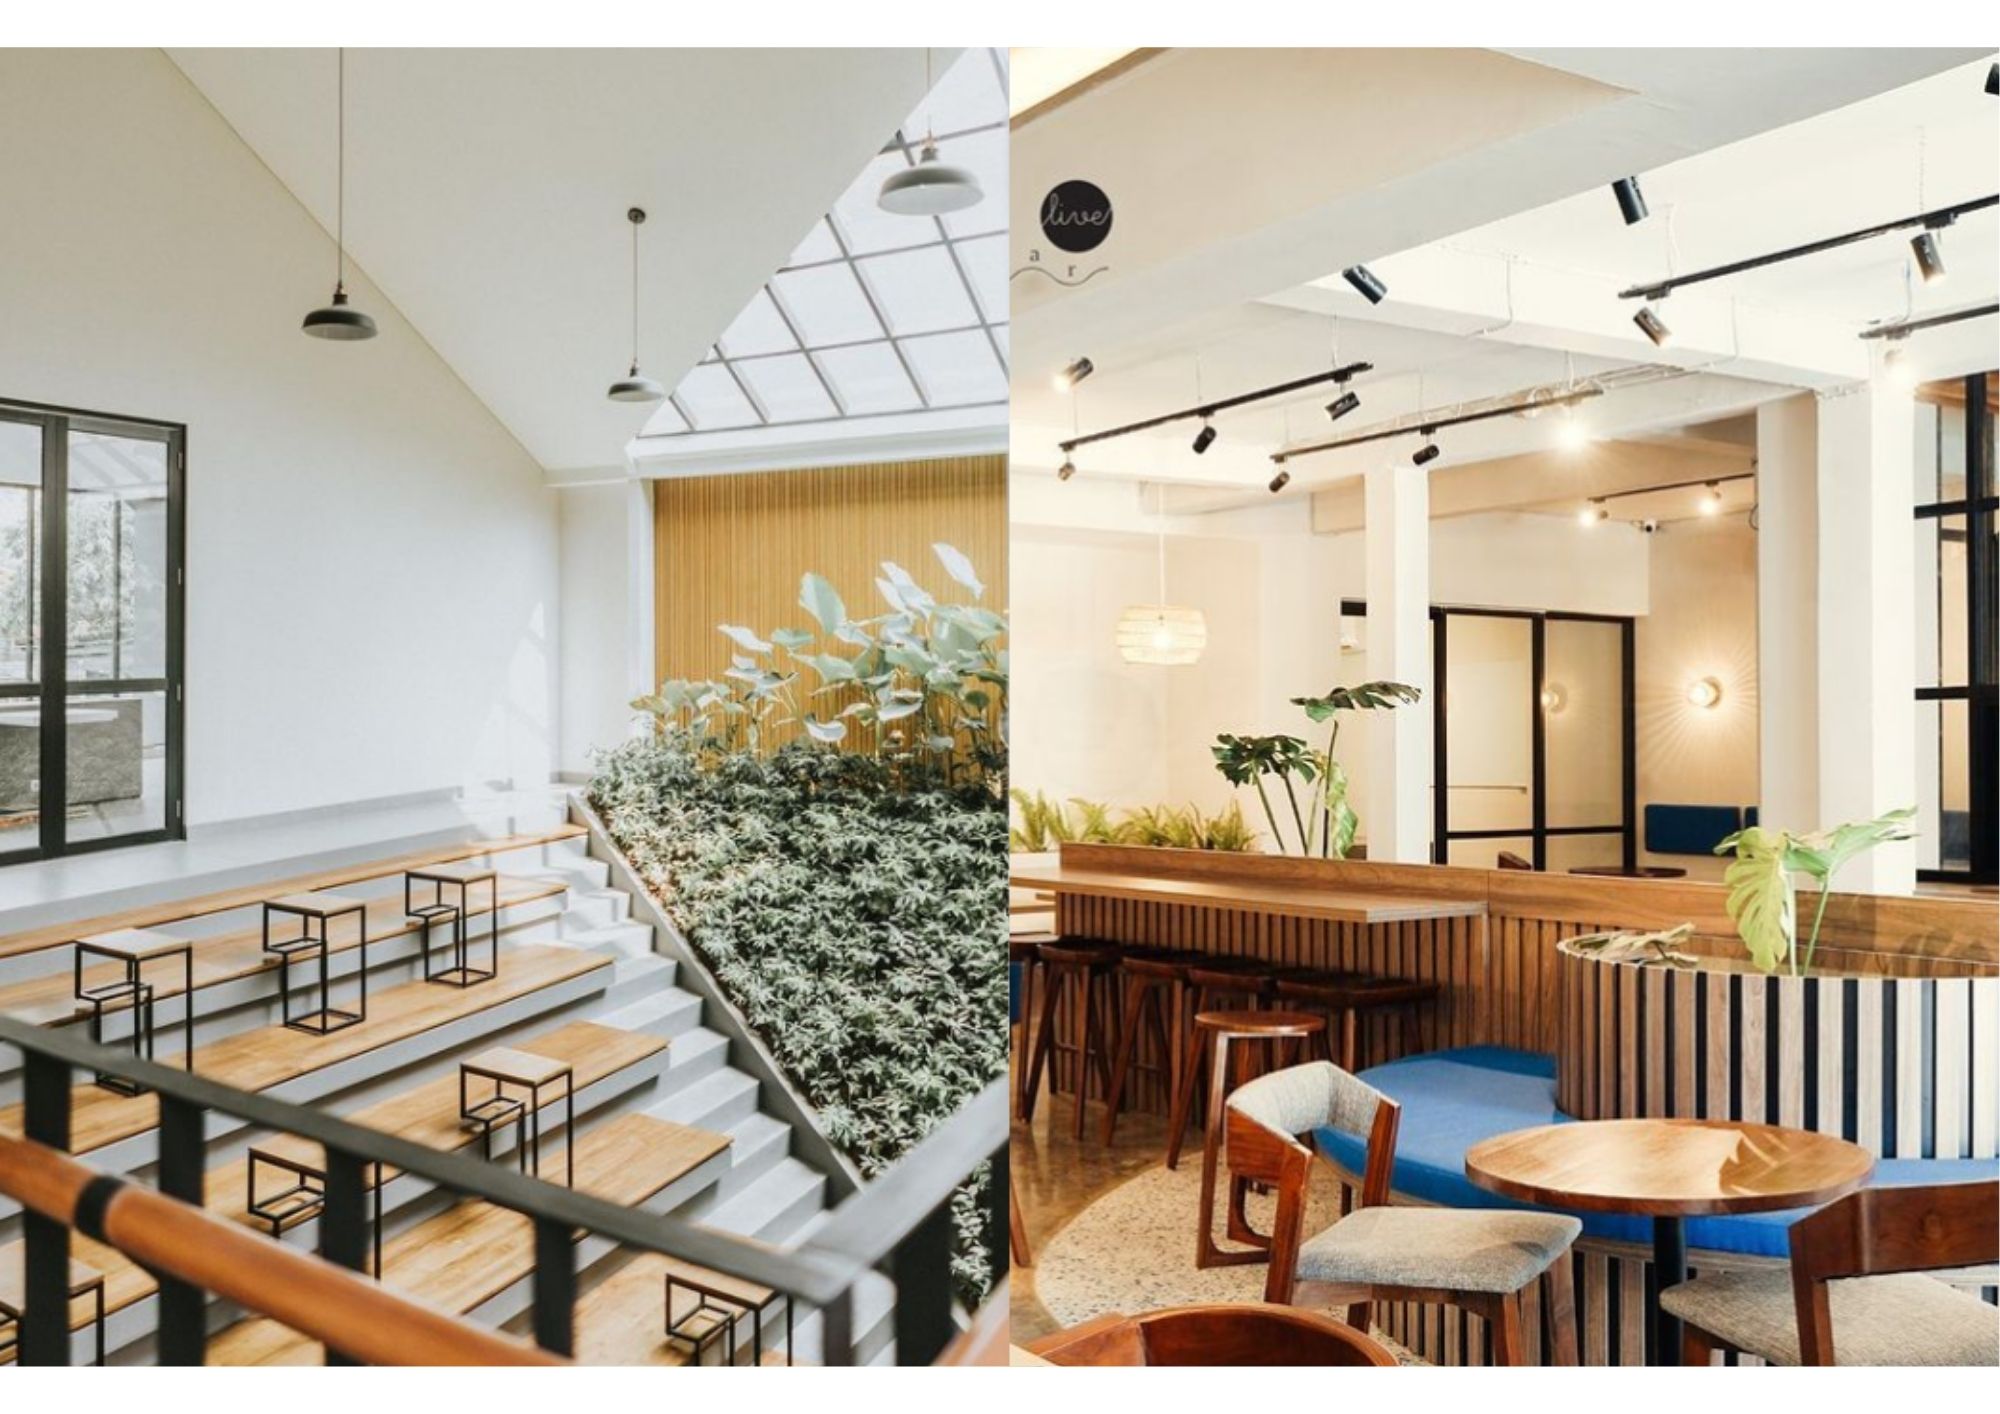 7 Rekomendasi Tempat untuk Work from Cafe yang Super Nyaman!